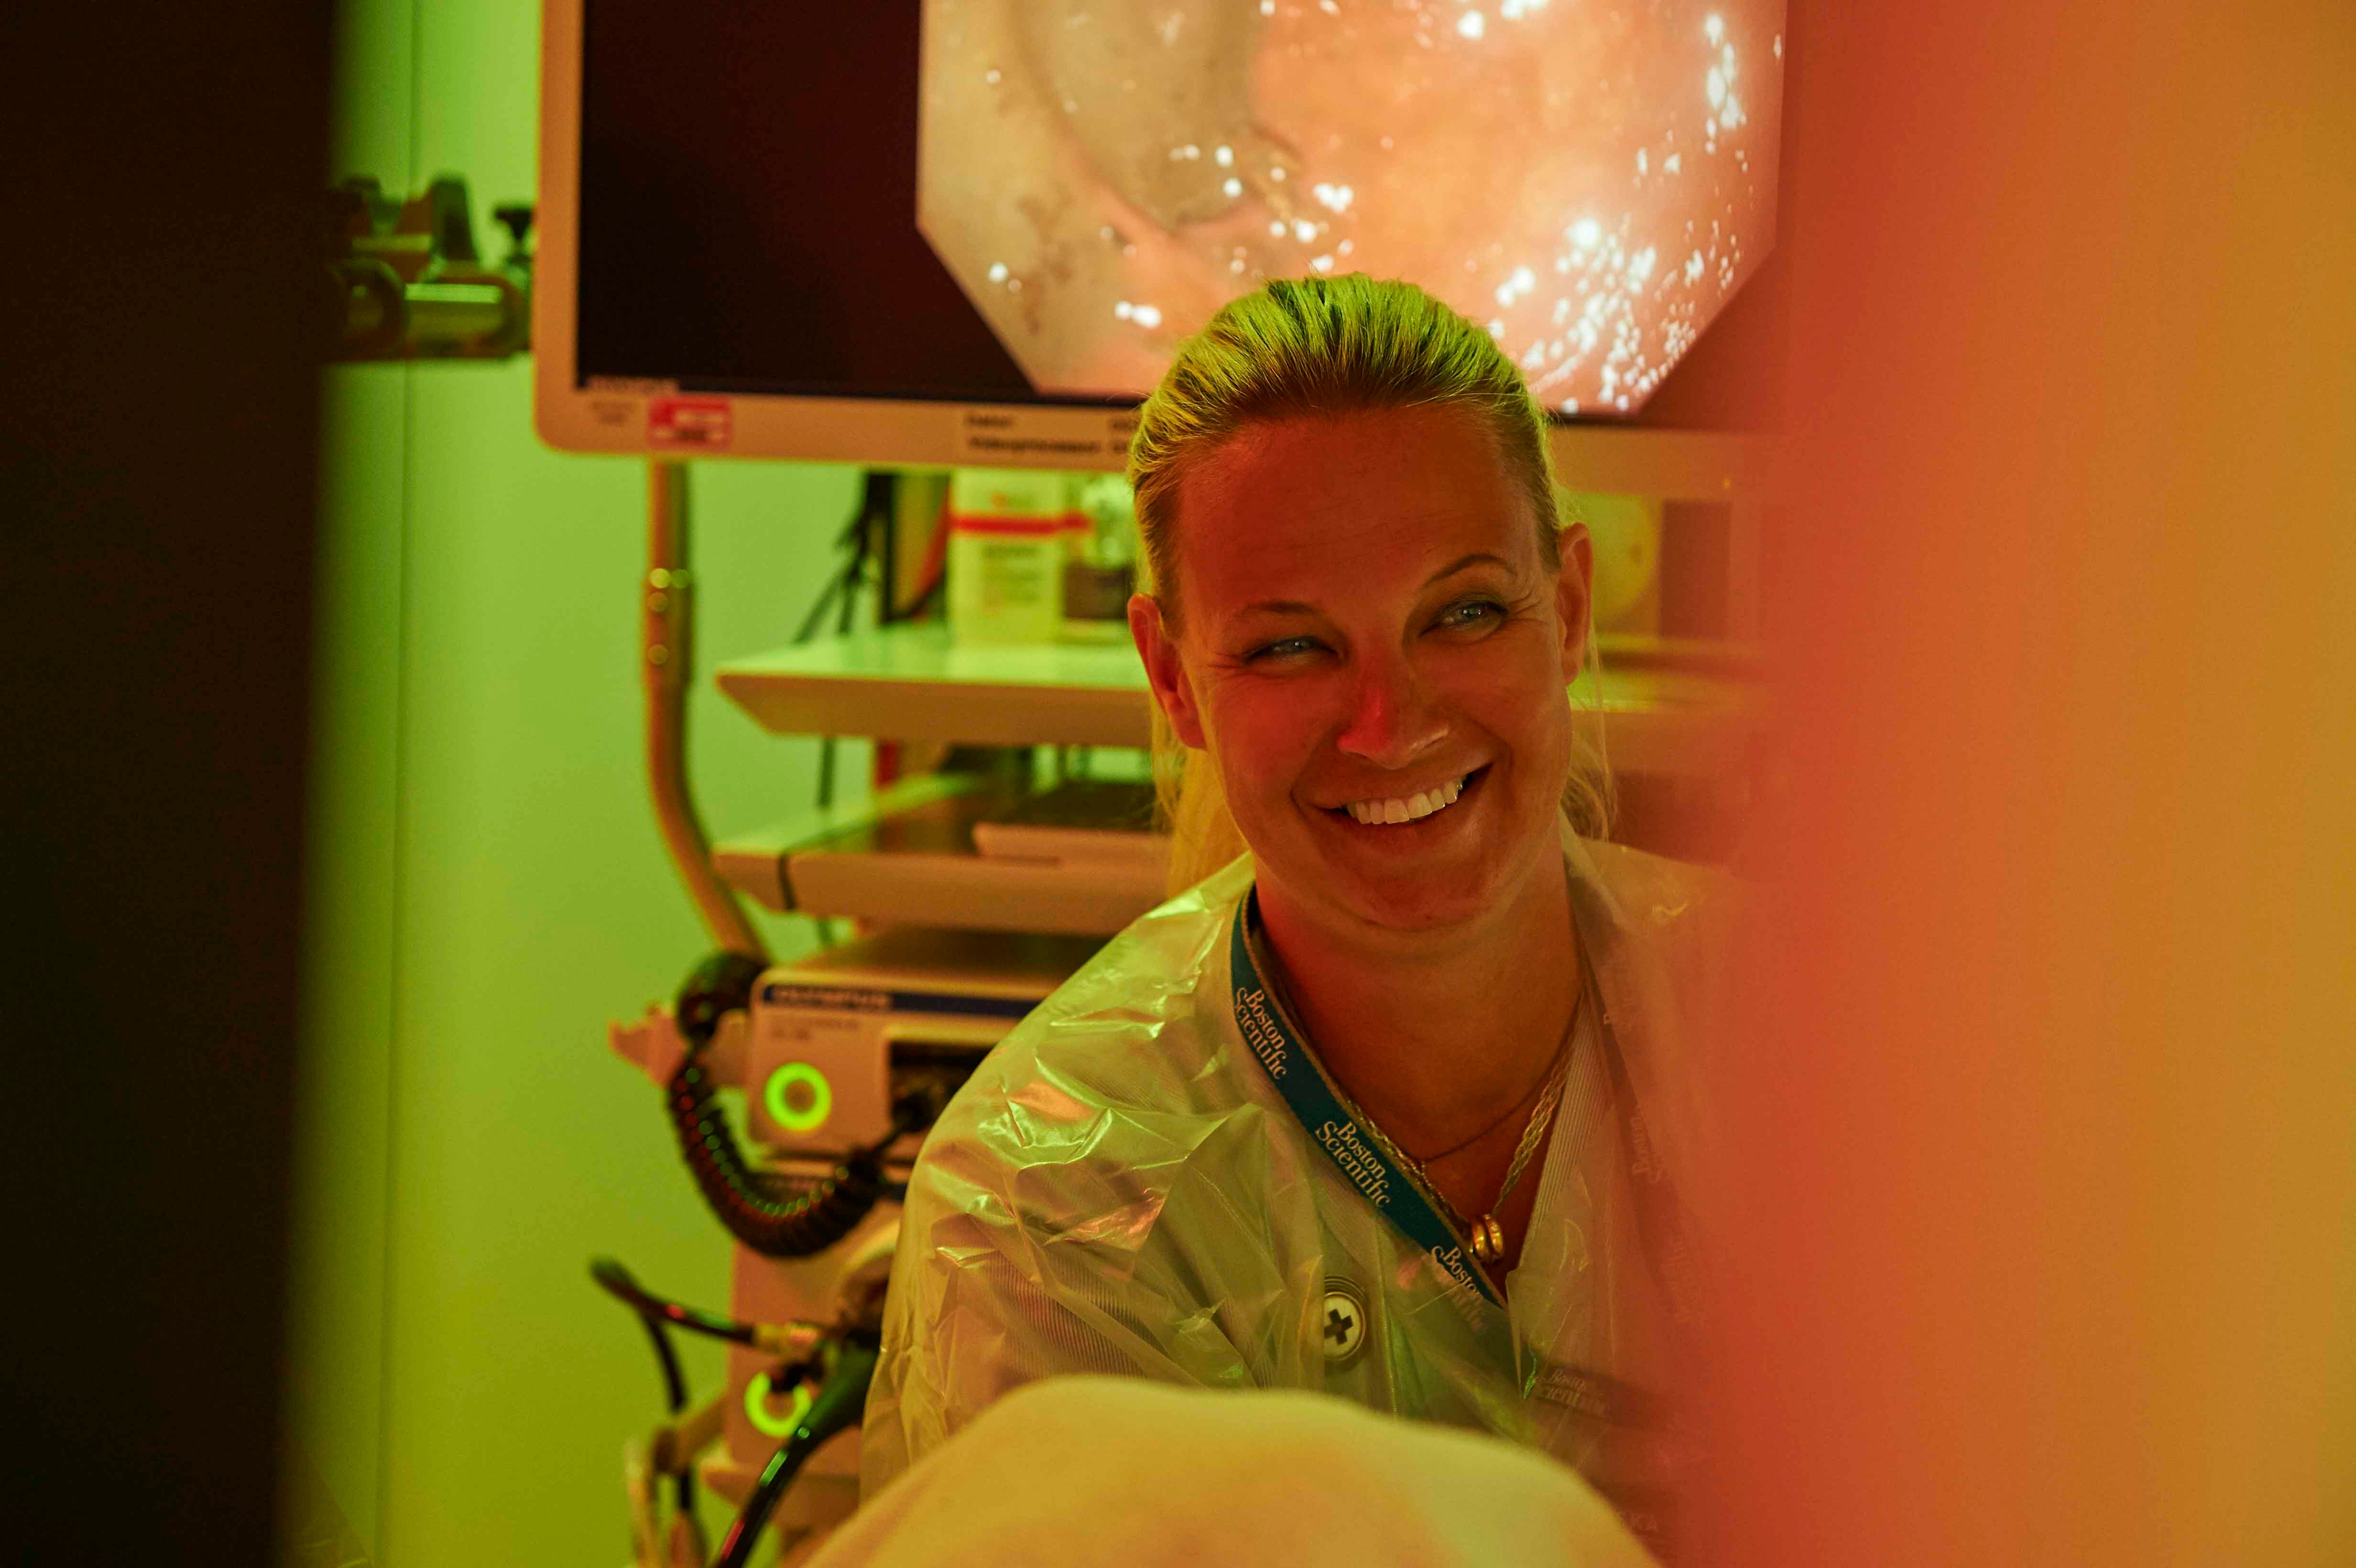 En nöjd sjuksköterska som genomför en medicinsk ingrepp på en patient i ergonomiskt ljus